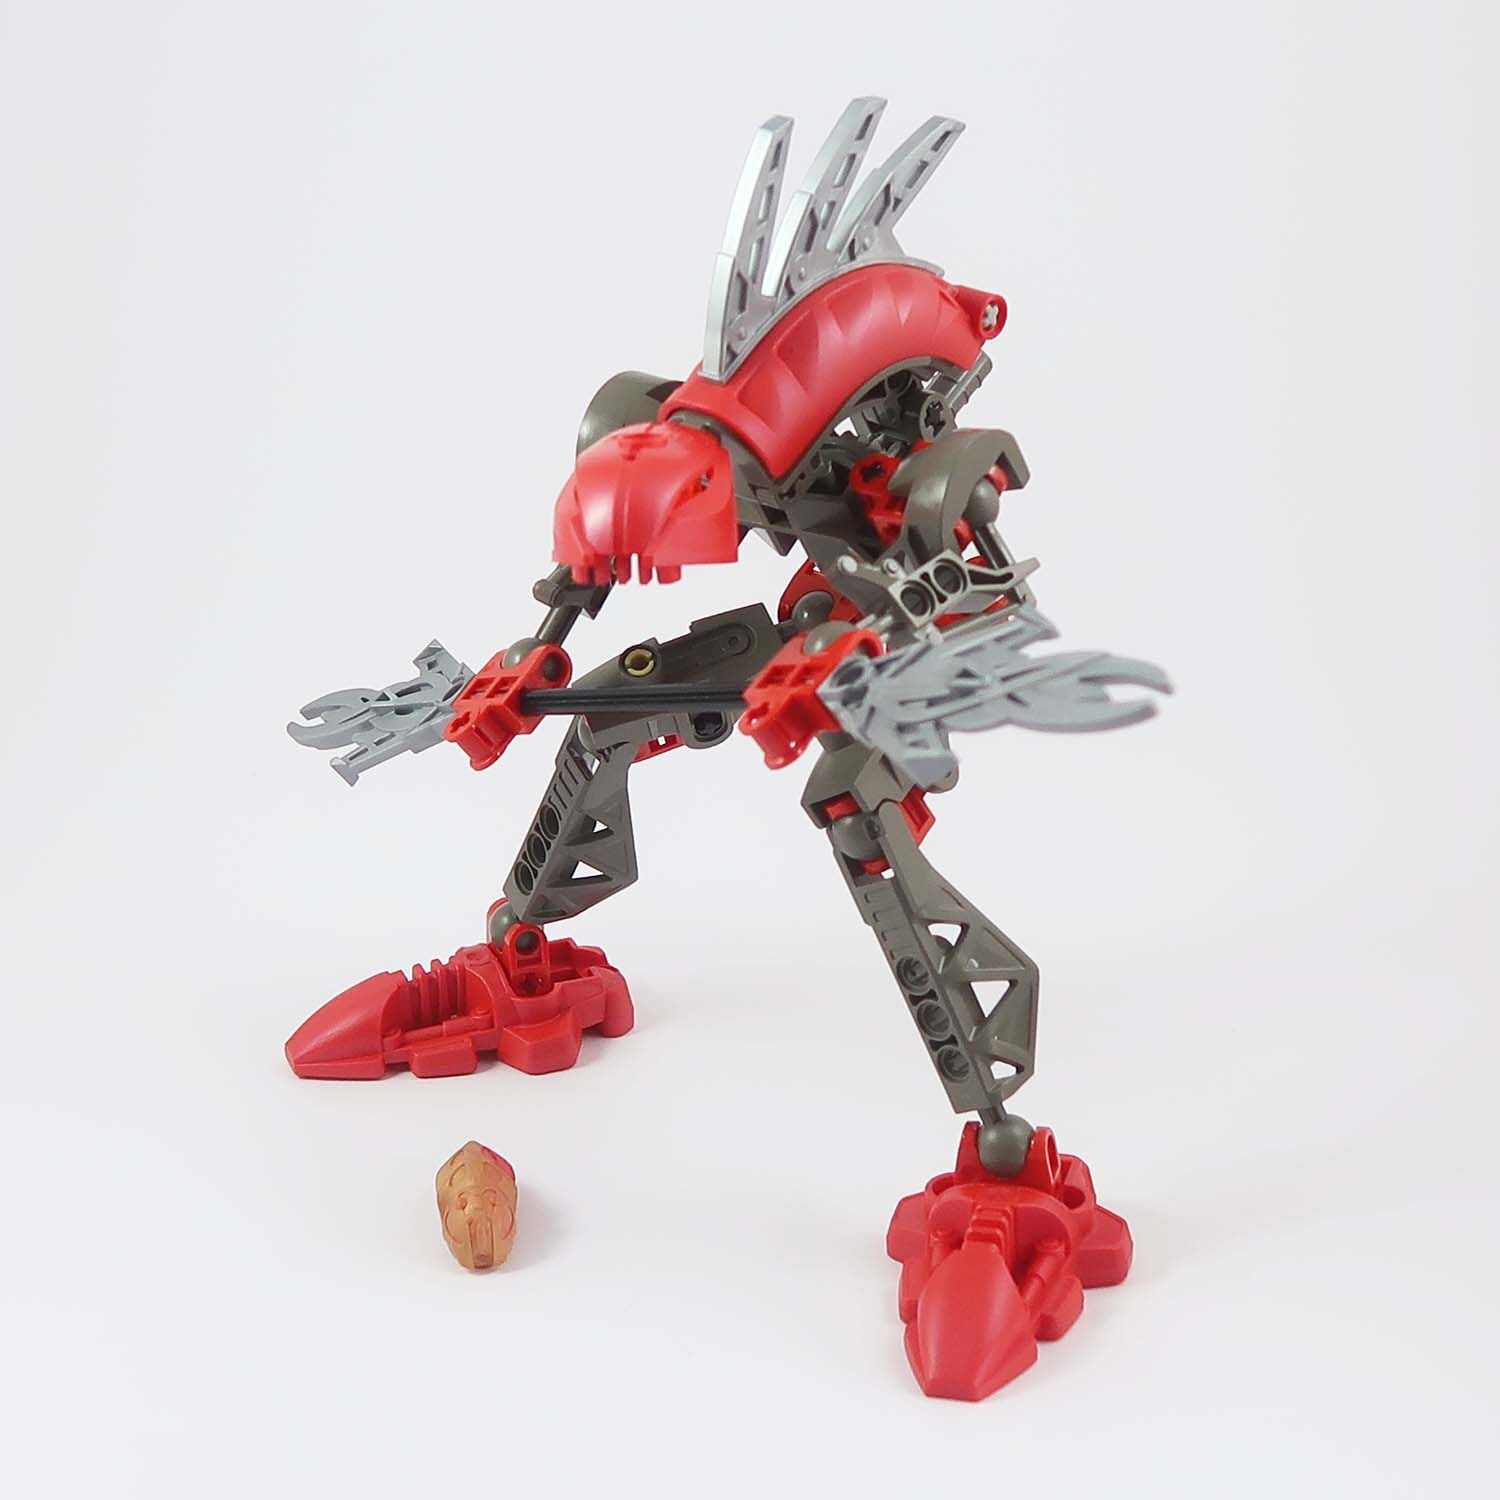 LEGO Bionicle - Rahkshi Turahk (8592)